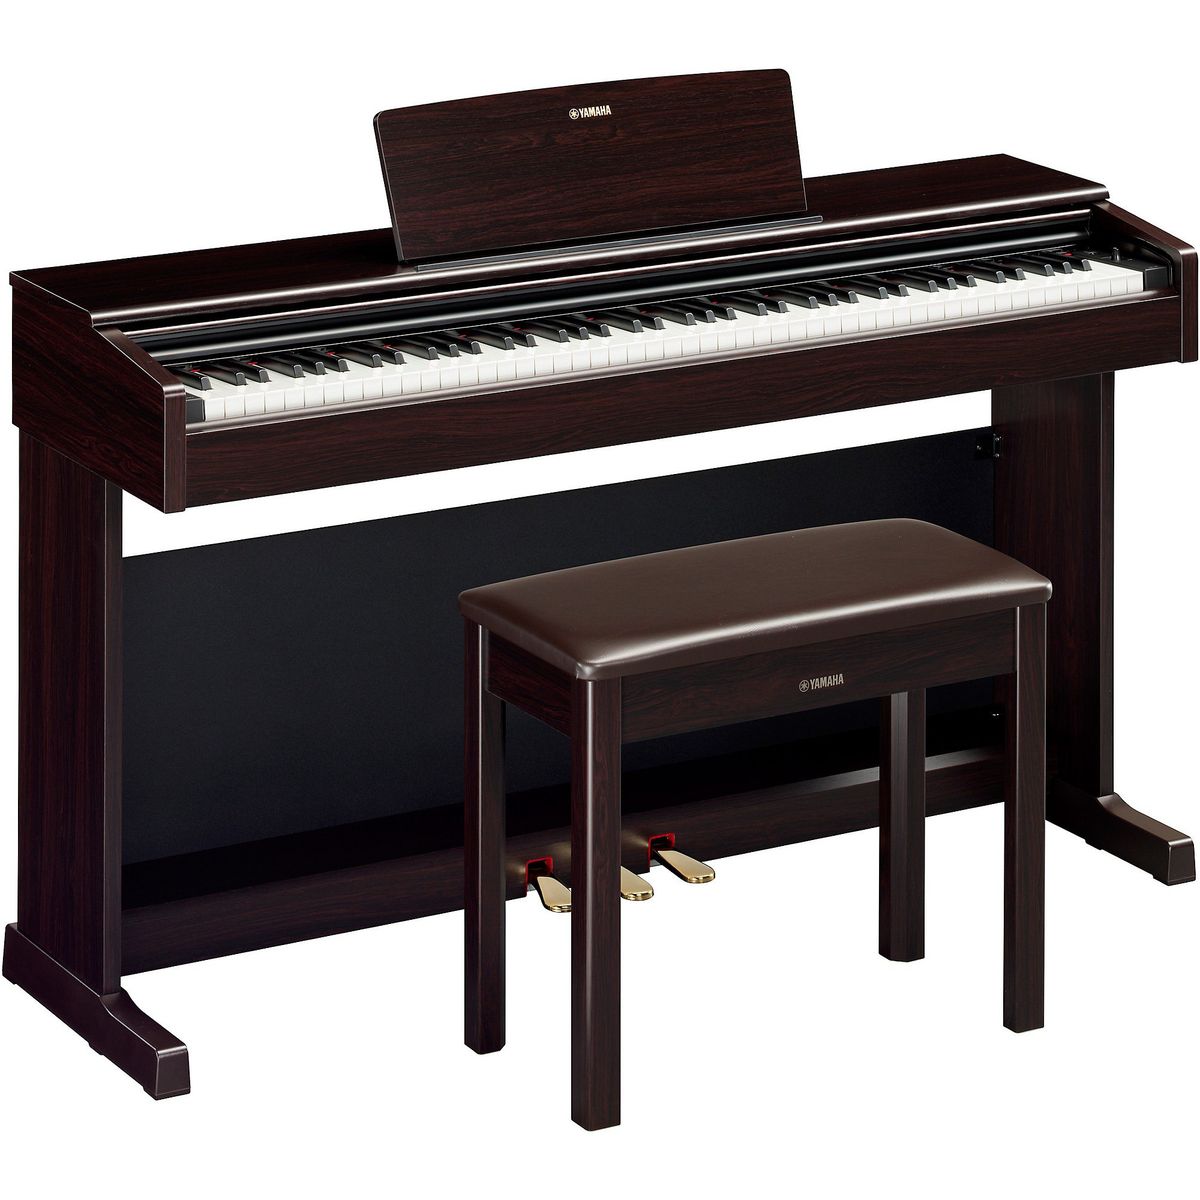 Цифровые пианино Yamaha YDP-145R Arius (банкетка в комплекте) музыкальное пианино утёнок 10 клавиш работает от батареек